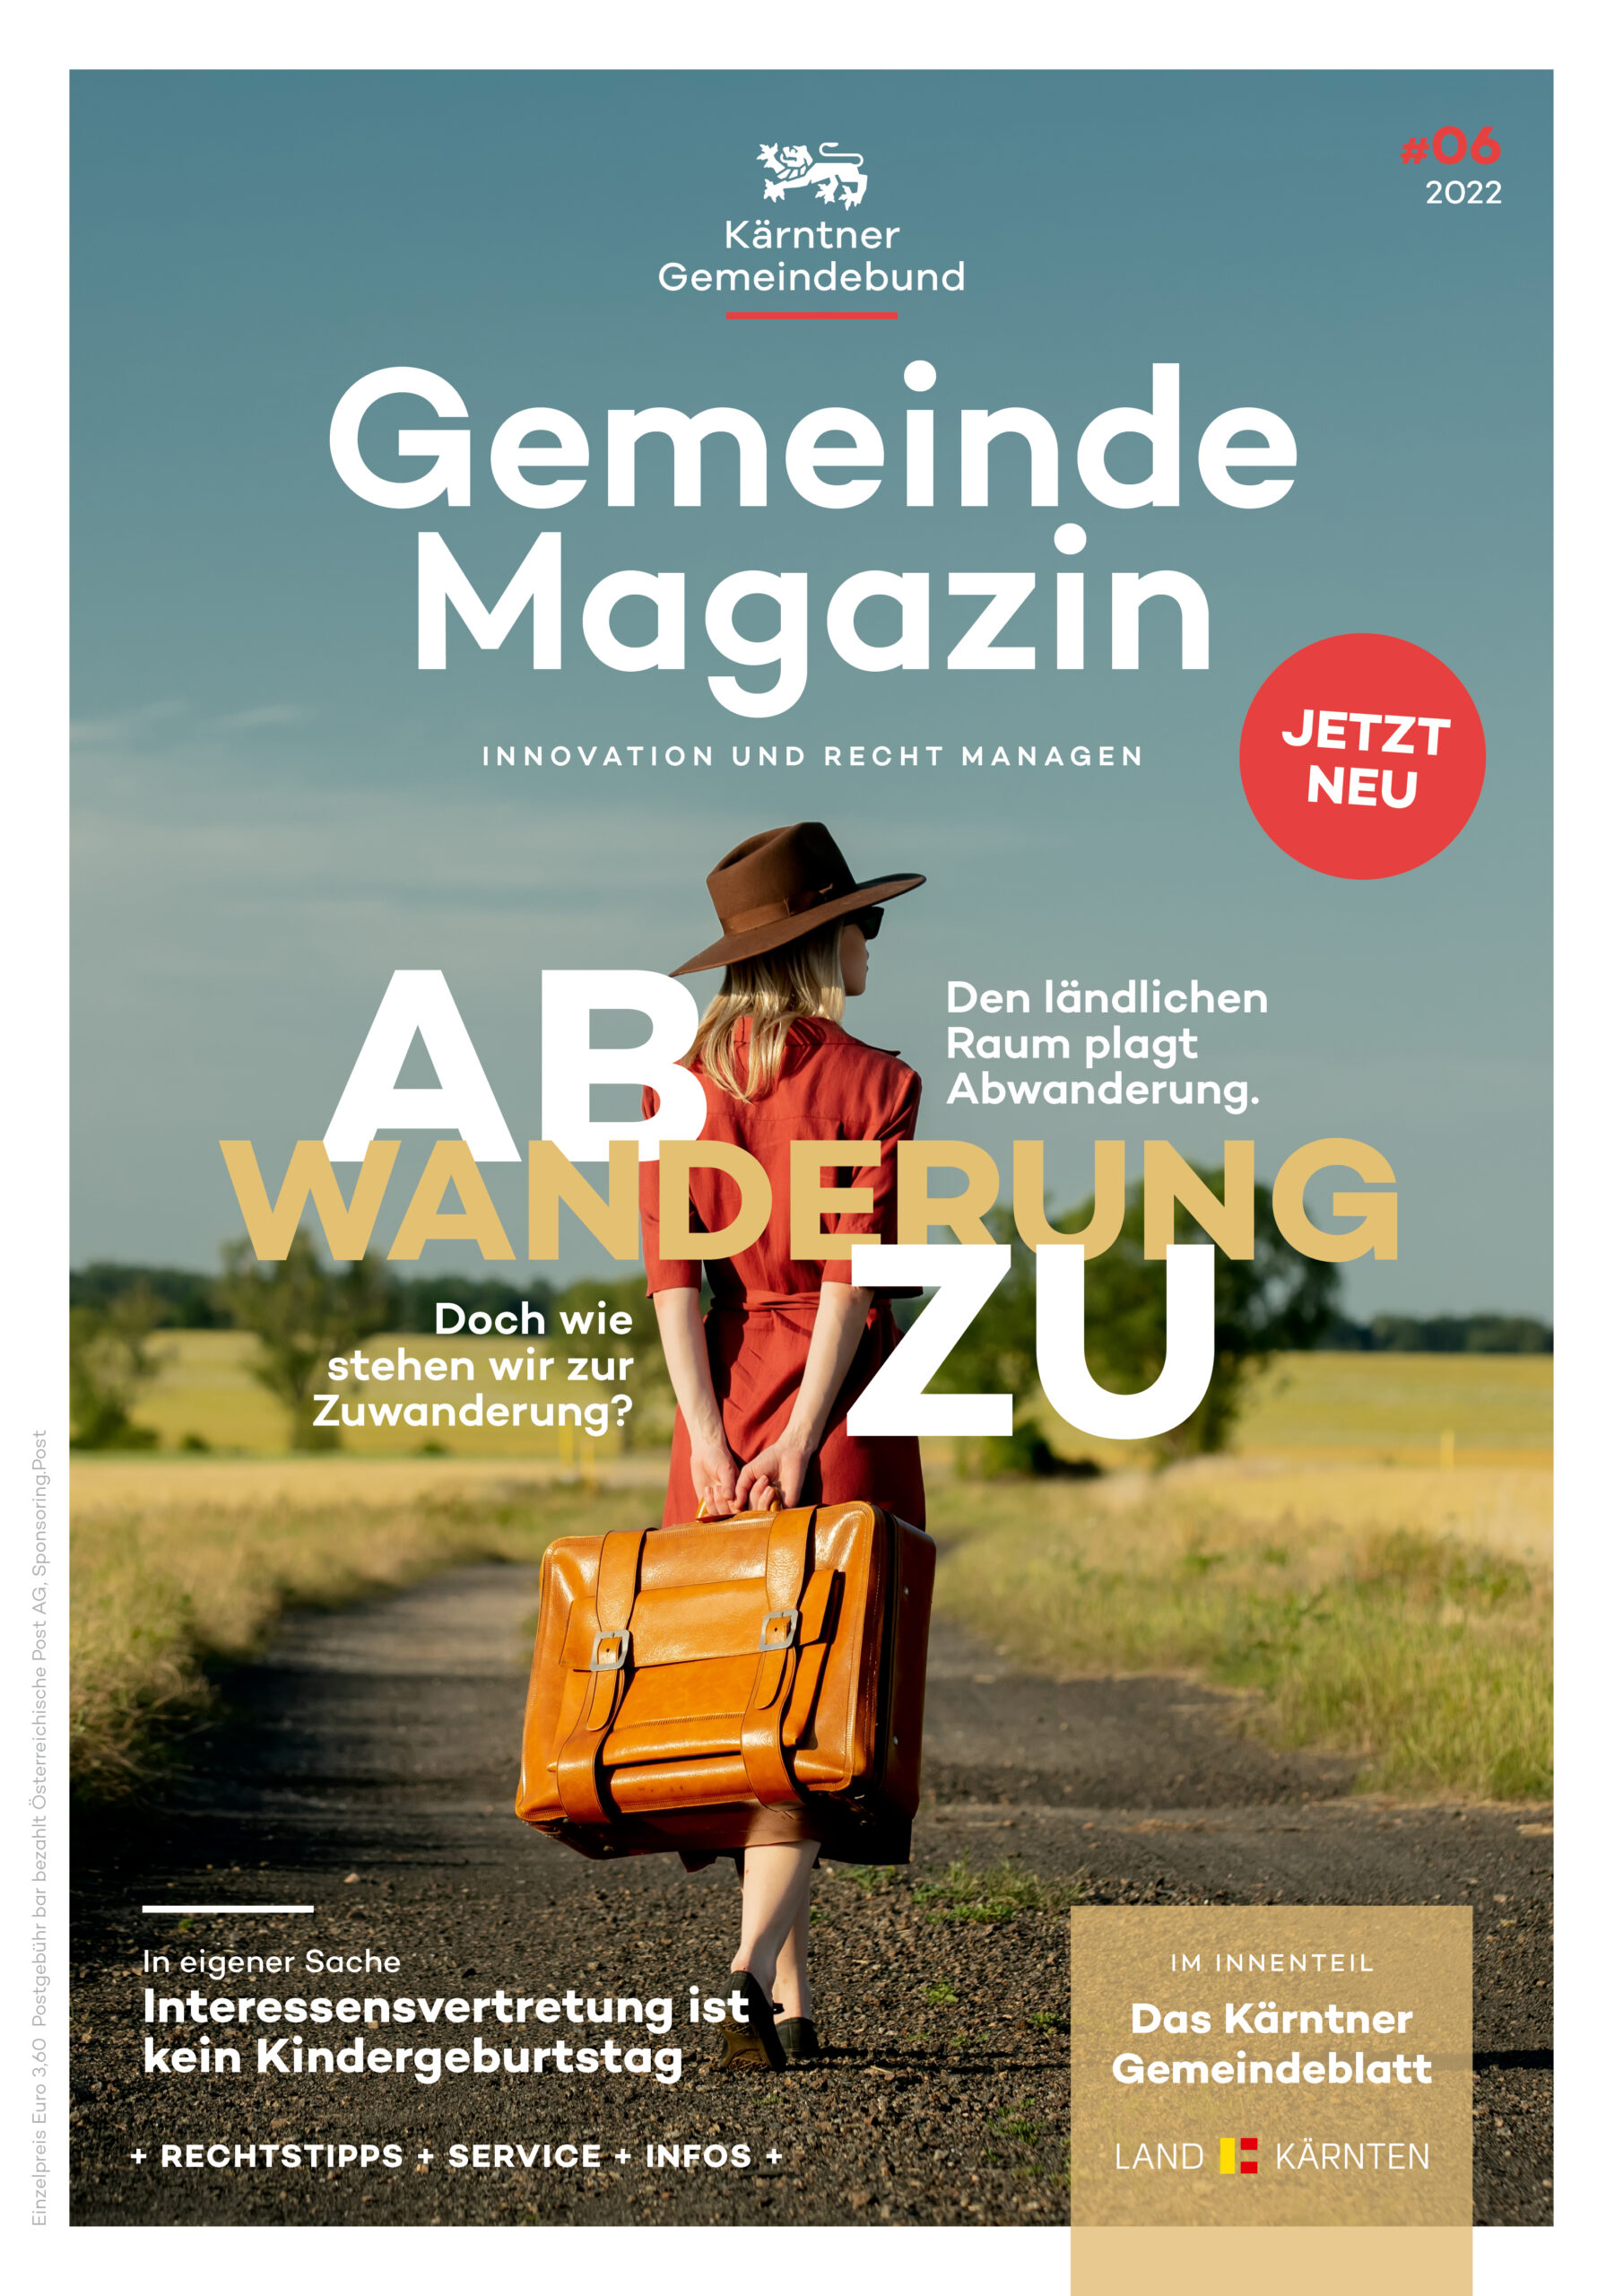 Kärntner Gemeindebund Gemeindemagazin Ausgabe 06 von 2022 zum Thema Ab- und Zuwanderung